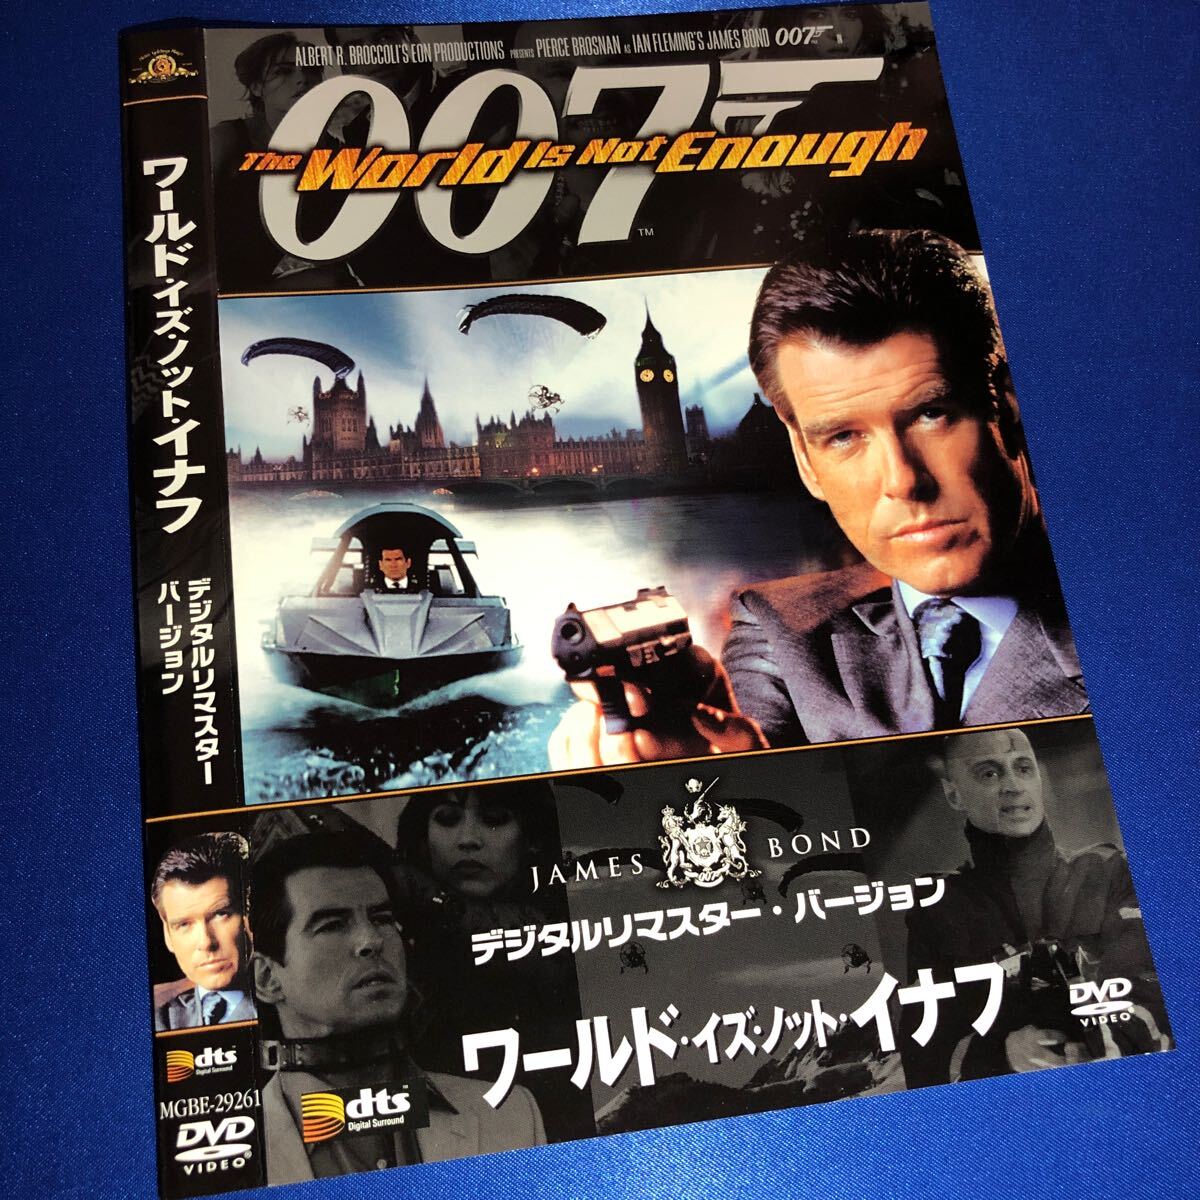 【即決価格・セル版・ディスクのクリーニング済み】007 ワールド ・イズ・ノット・イナフ DVD 《棚番1026》_画像1